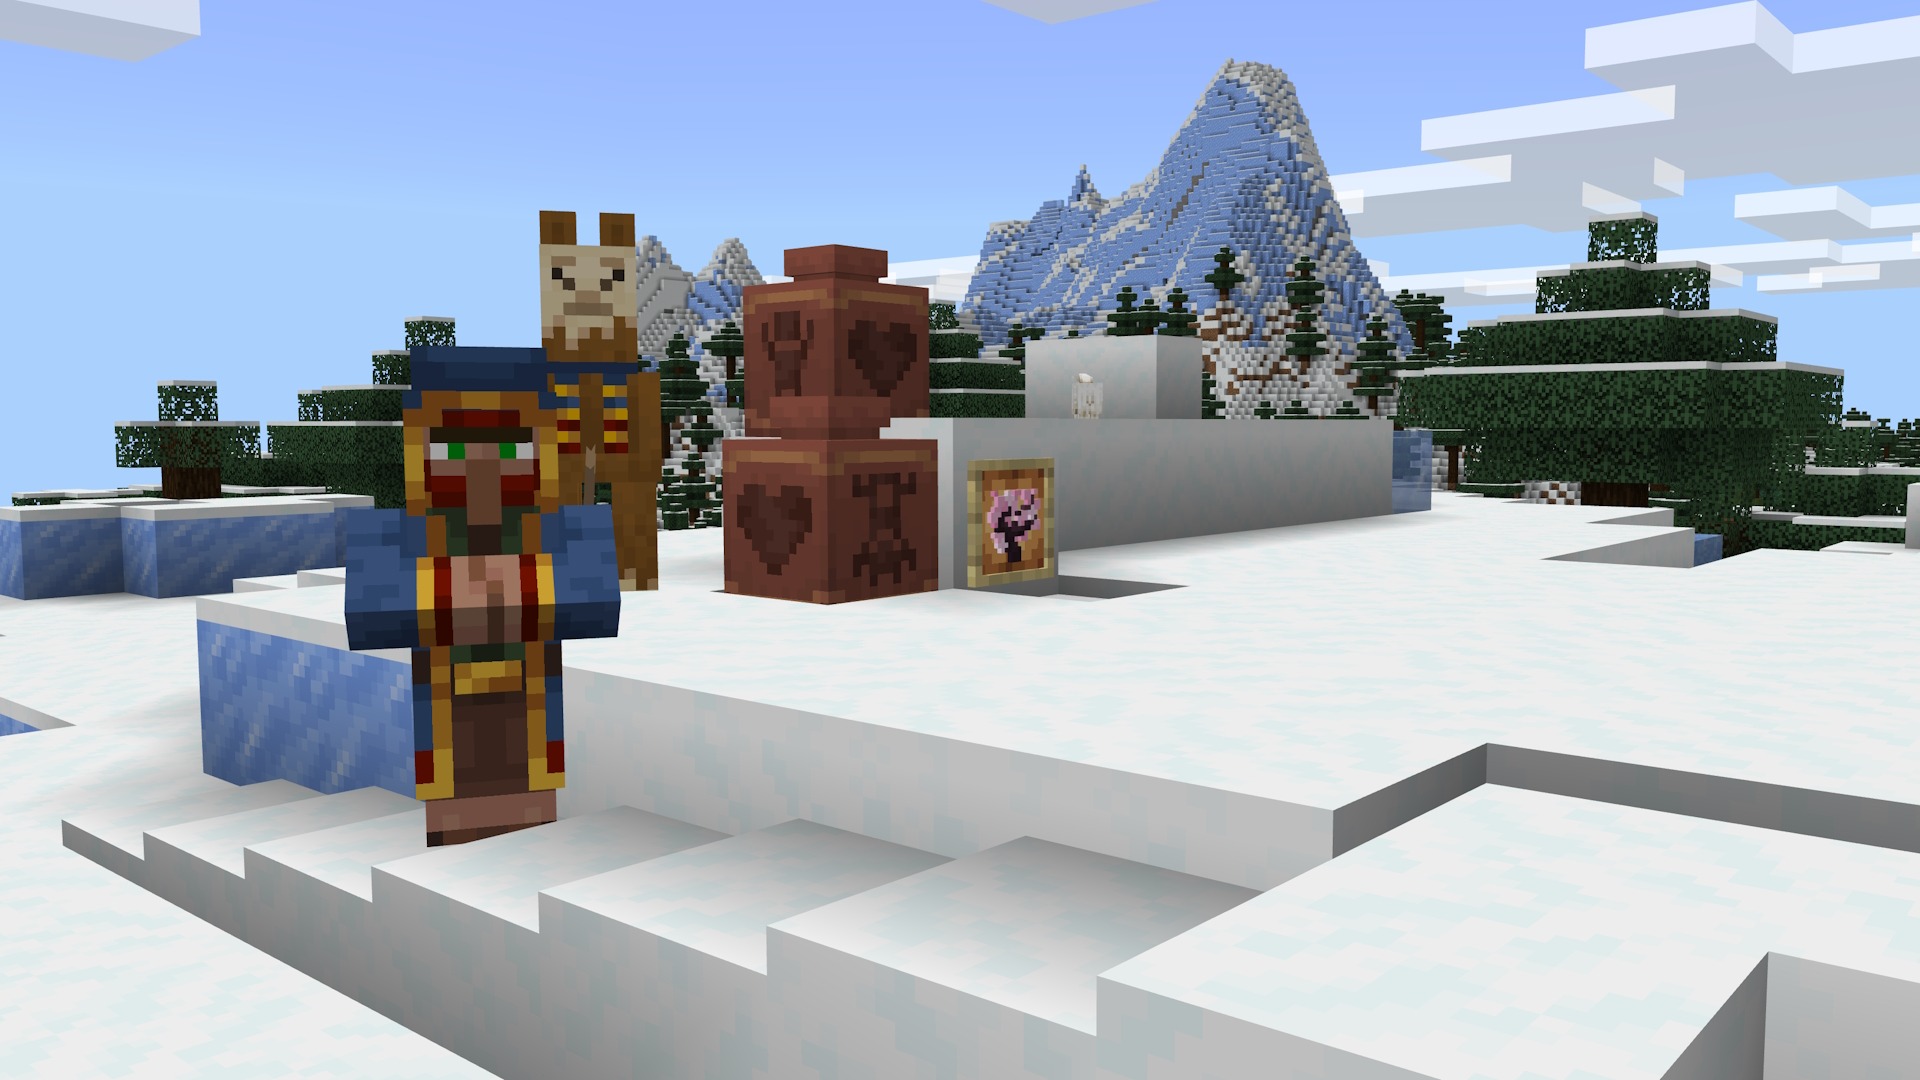 방황하는 상인과 라마, 아기 염소가 있는 Minecraft 스크린샷.  상인은 쌓인 눈 위에 서 있고 장면의 항목 액자에는 장식된 기둥과 체리 묘목이 있습니다.